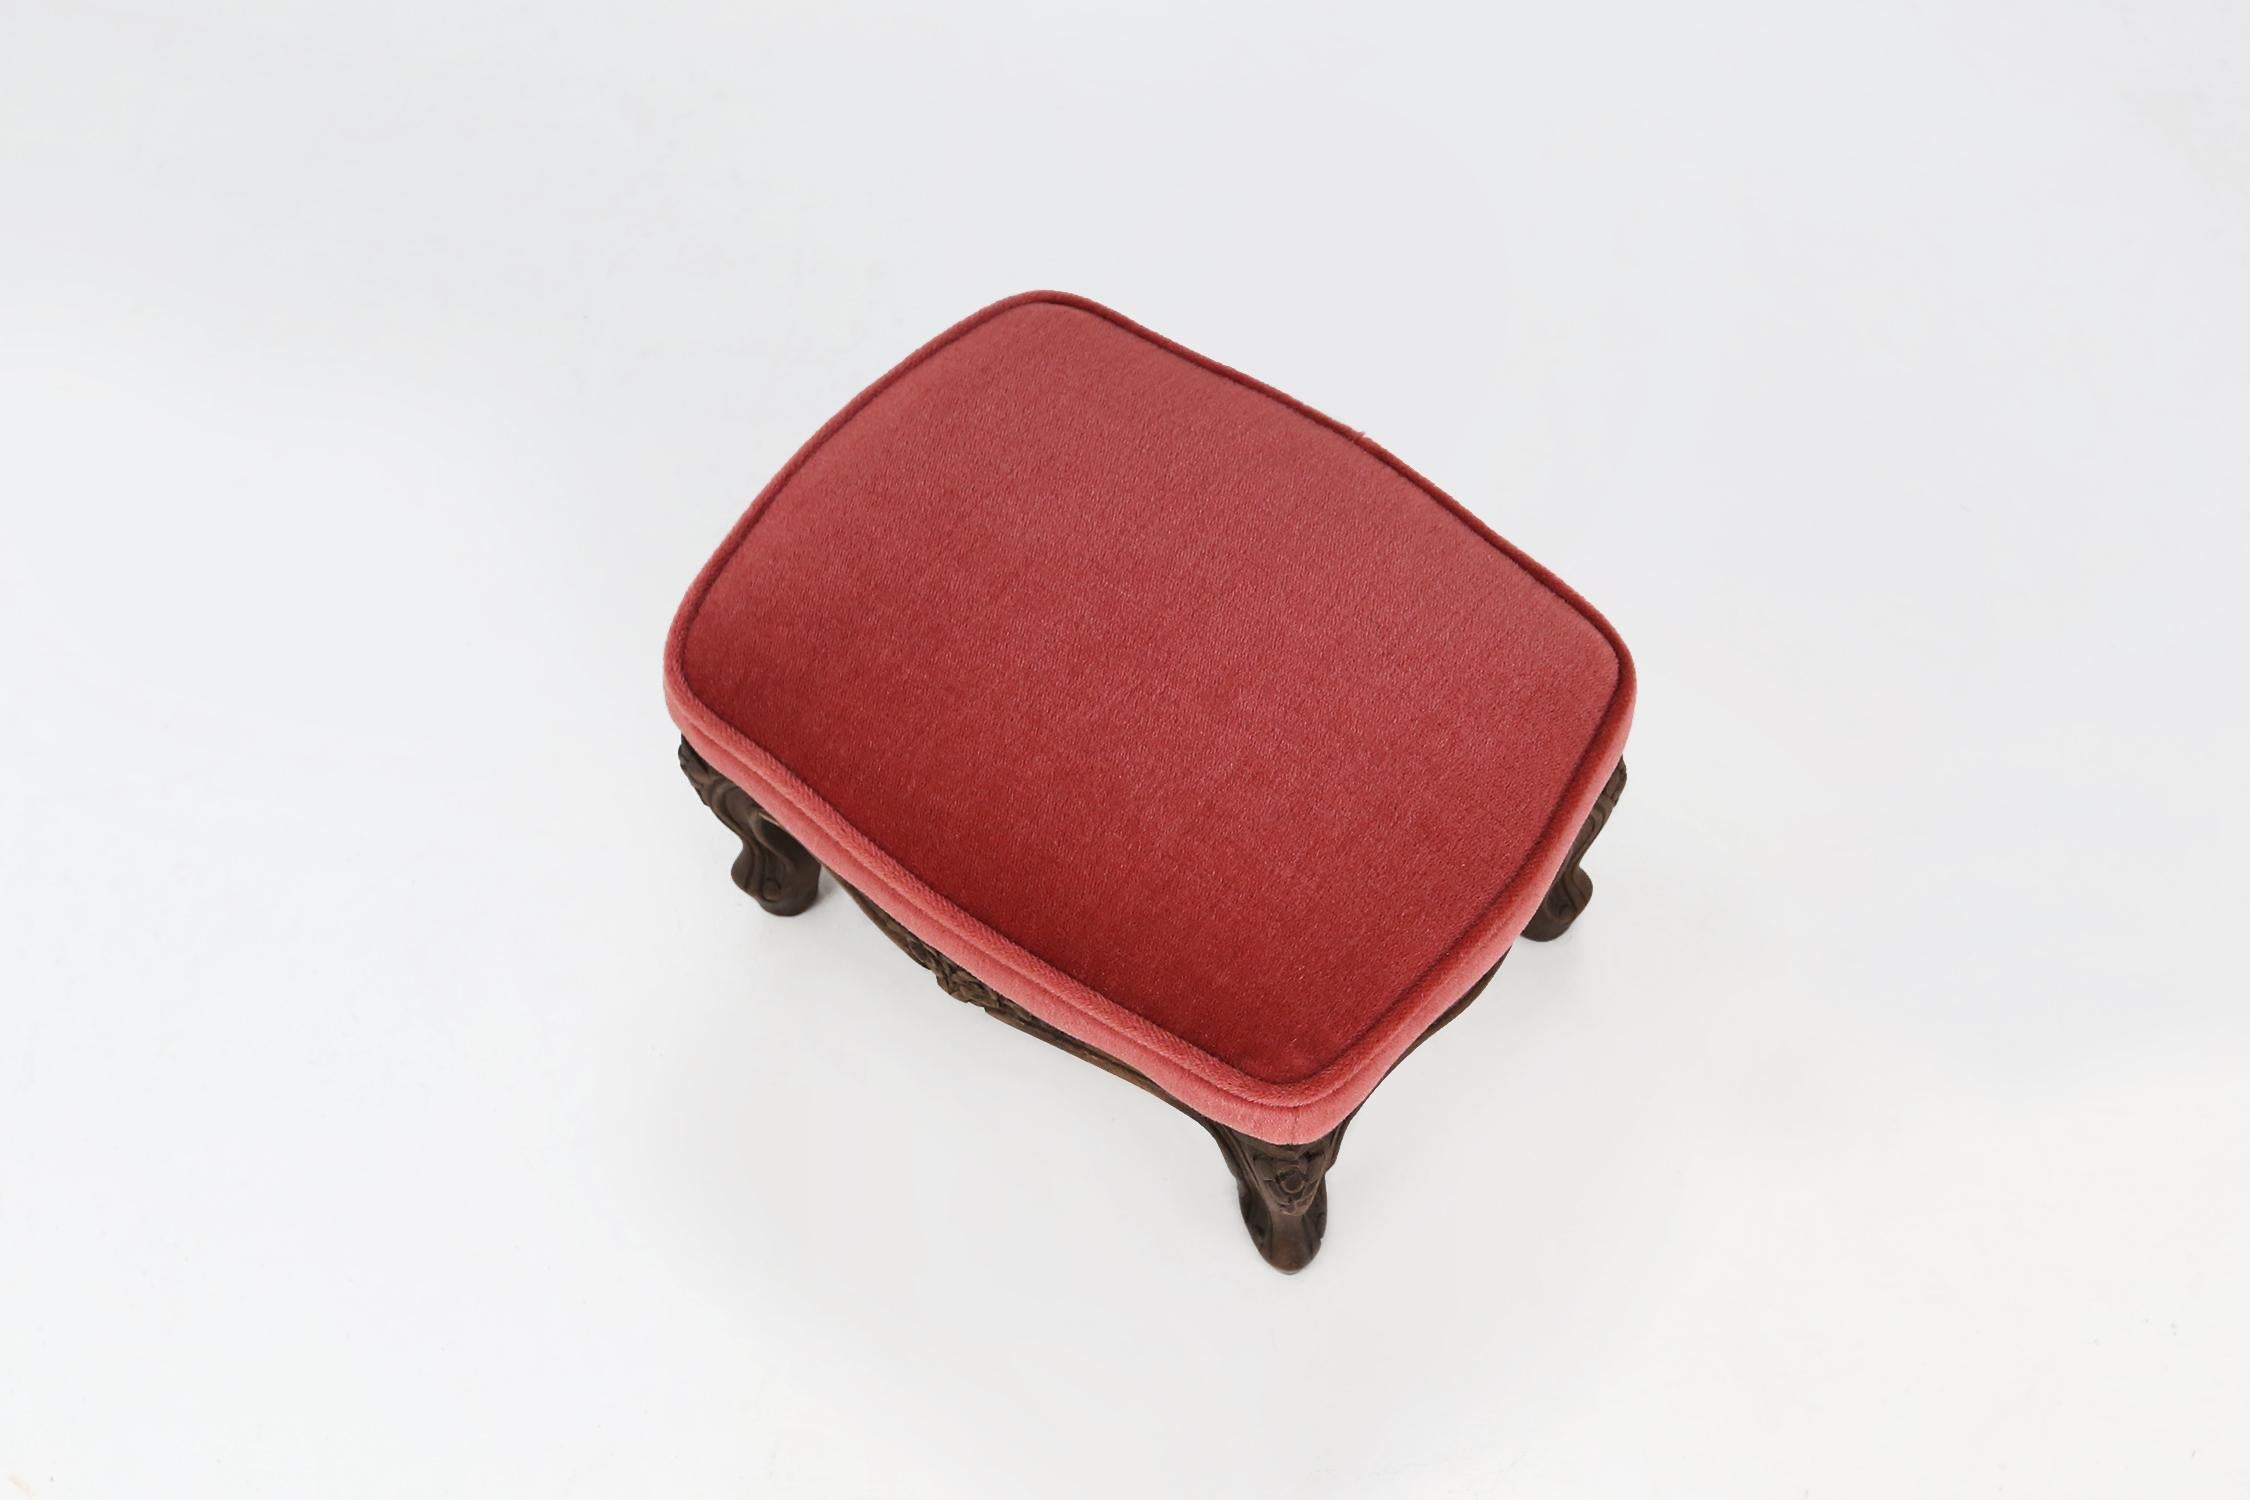 Vintage velvet stool made around 1950 in red/pink velvet fabric.